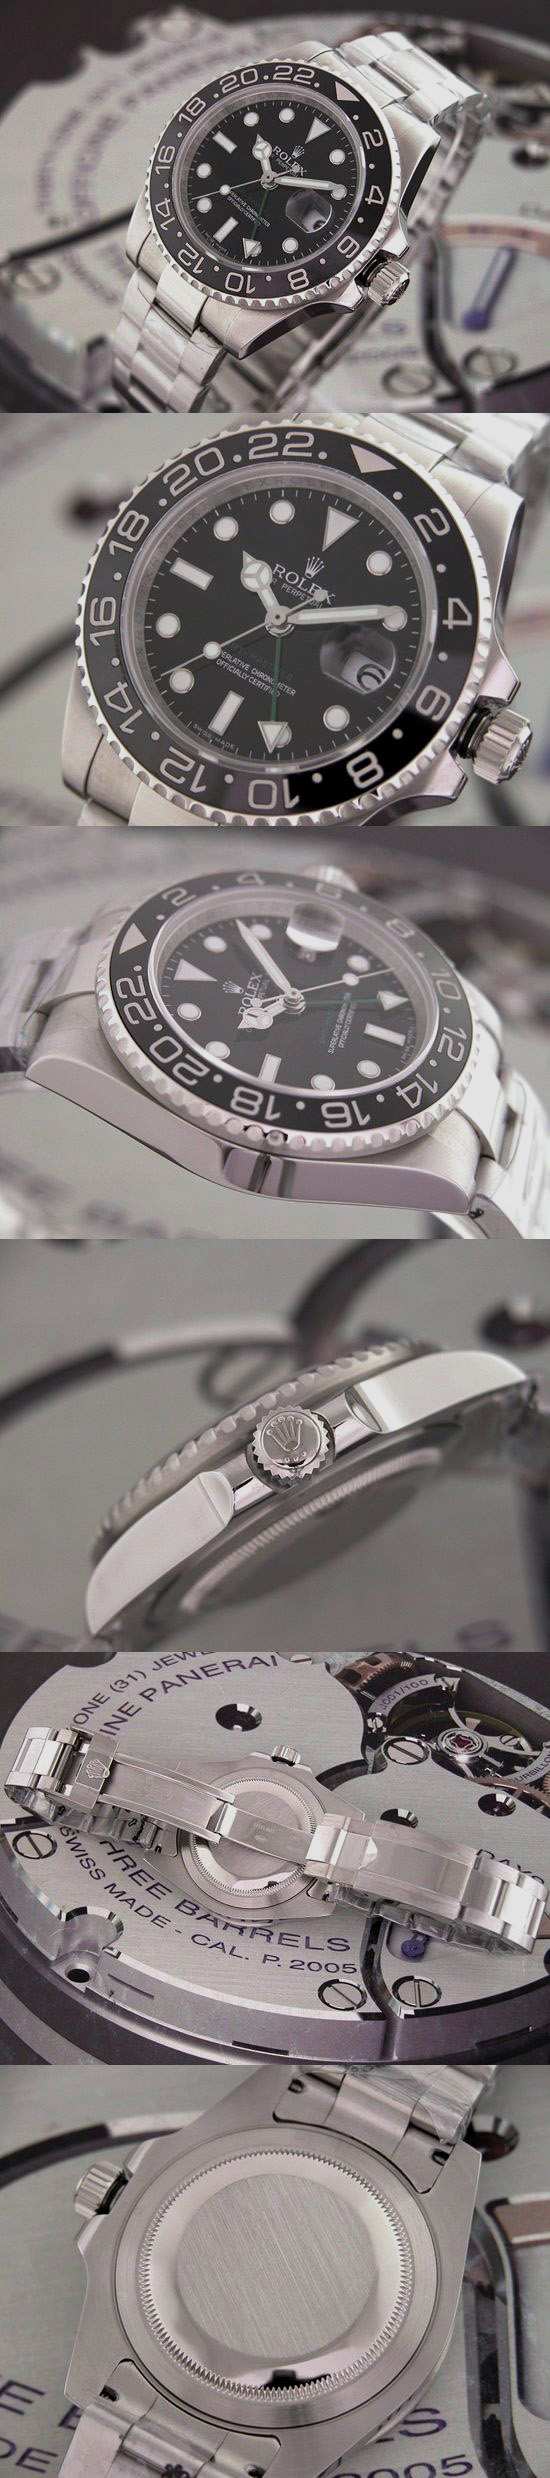 おしゃれなブランド時計がロレックス-GMTマスター-ROLEX-16718-16-男性用を提供します.